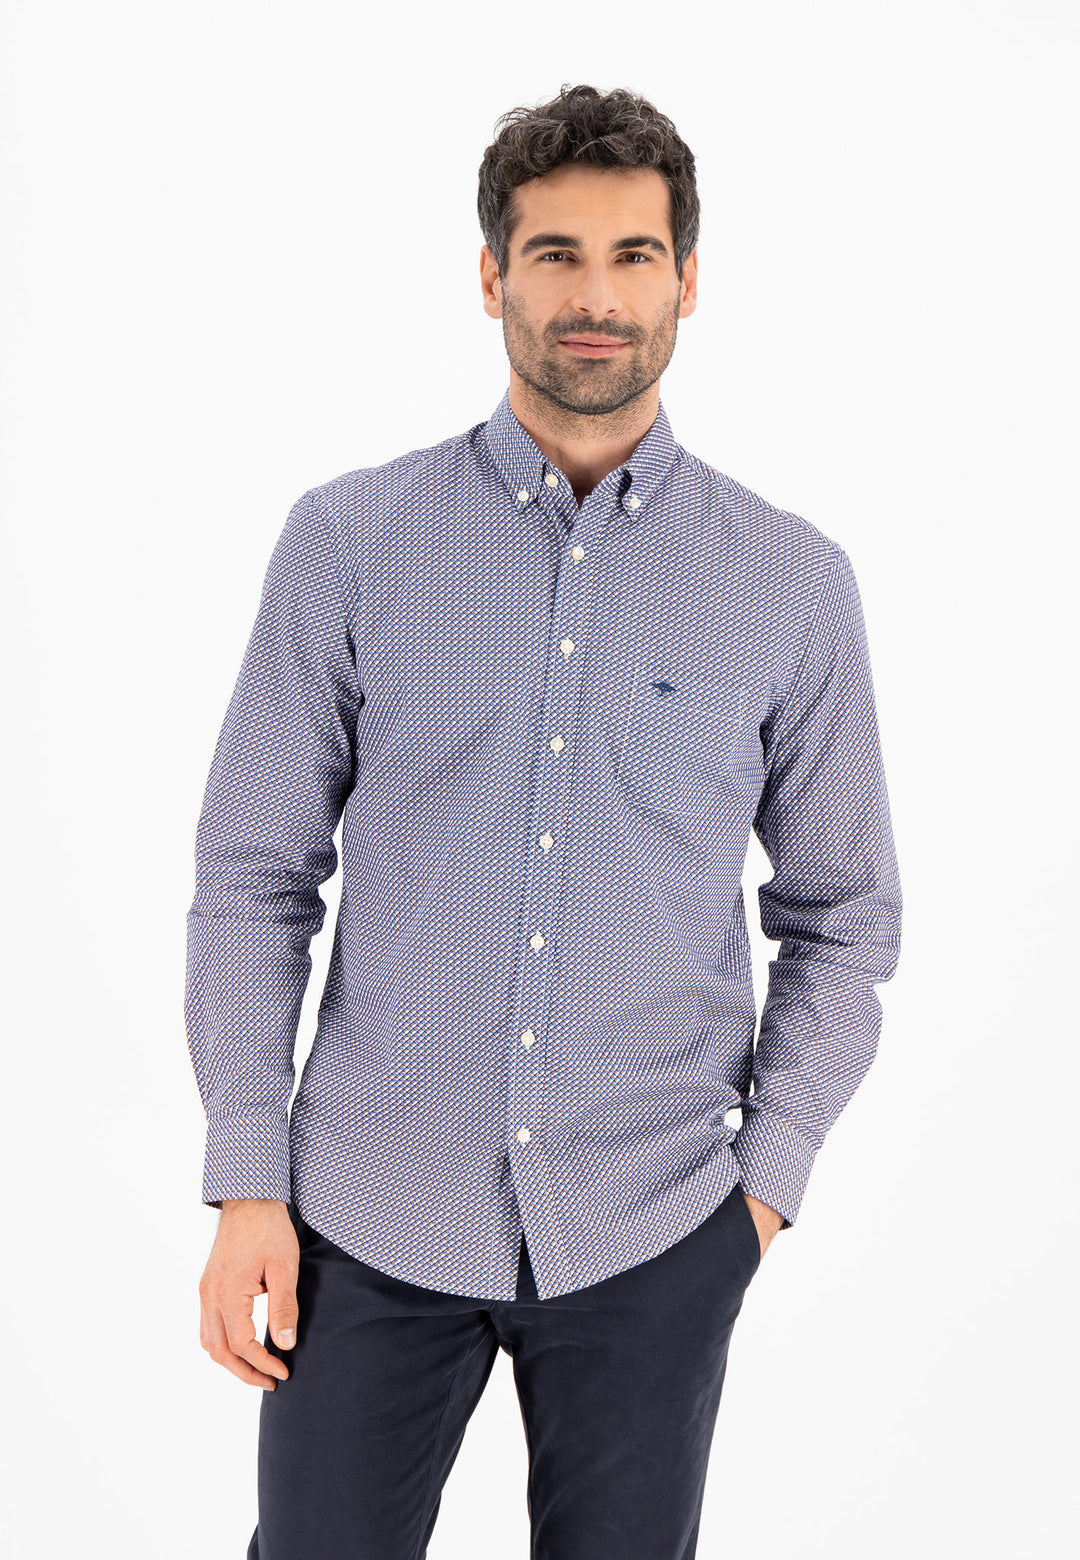 Men\'s shirts | Offizieller – official FYNCH-HATTON Shop shop Online online | Fynch-Hatton